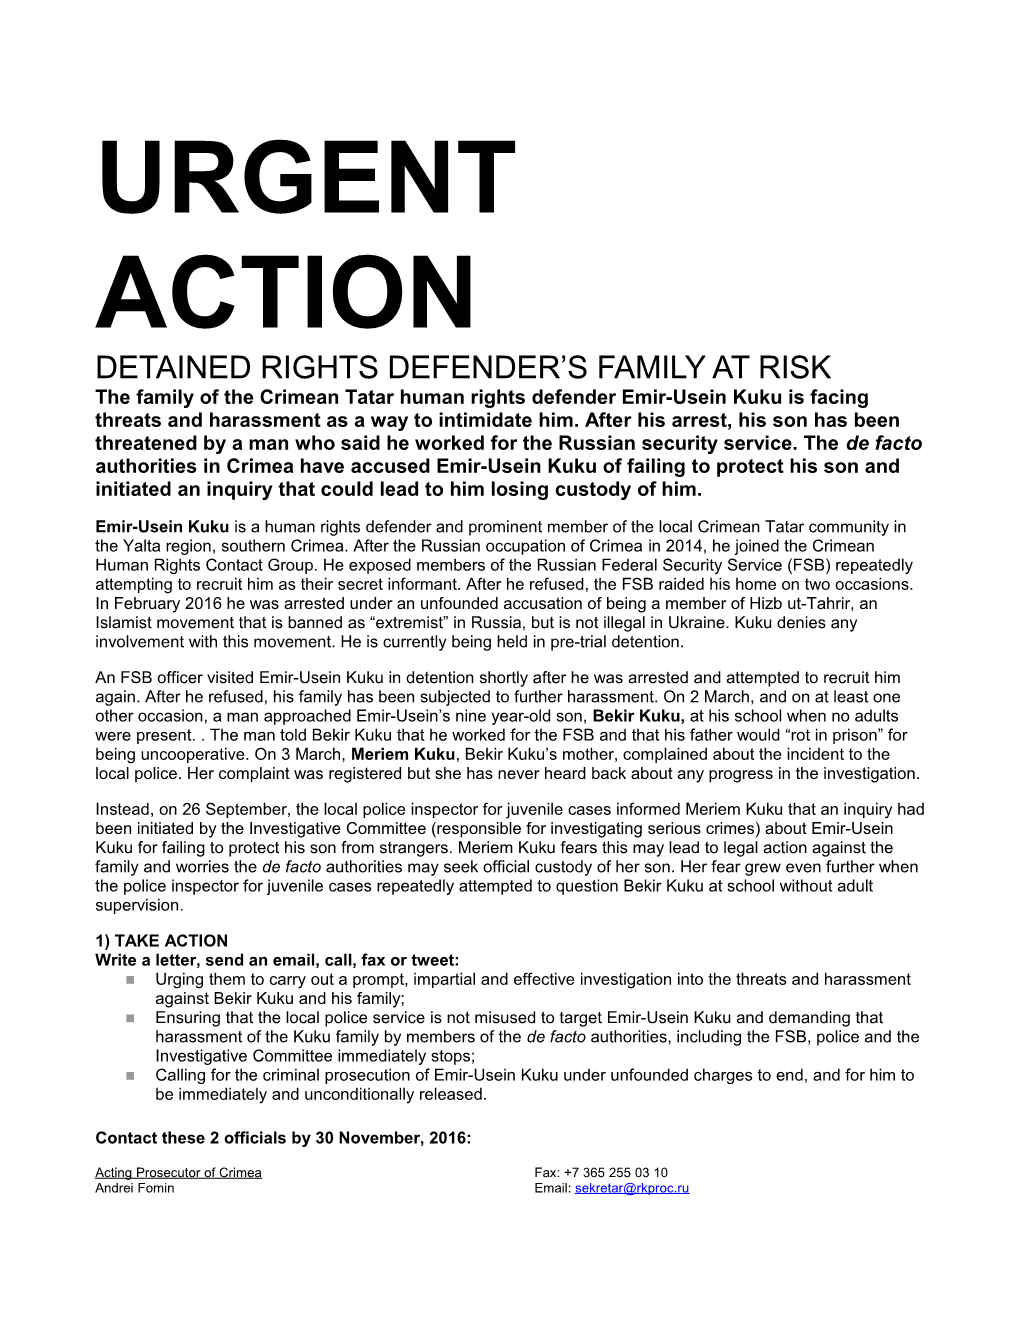 DETAINED Rightsdefender S Family at Risk